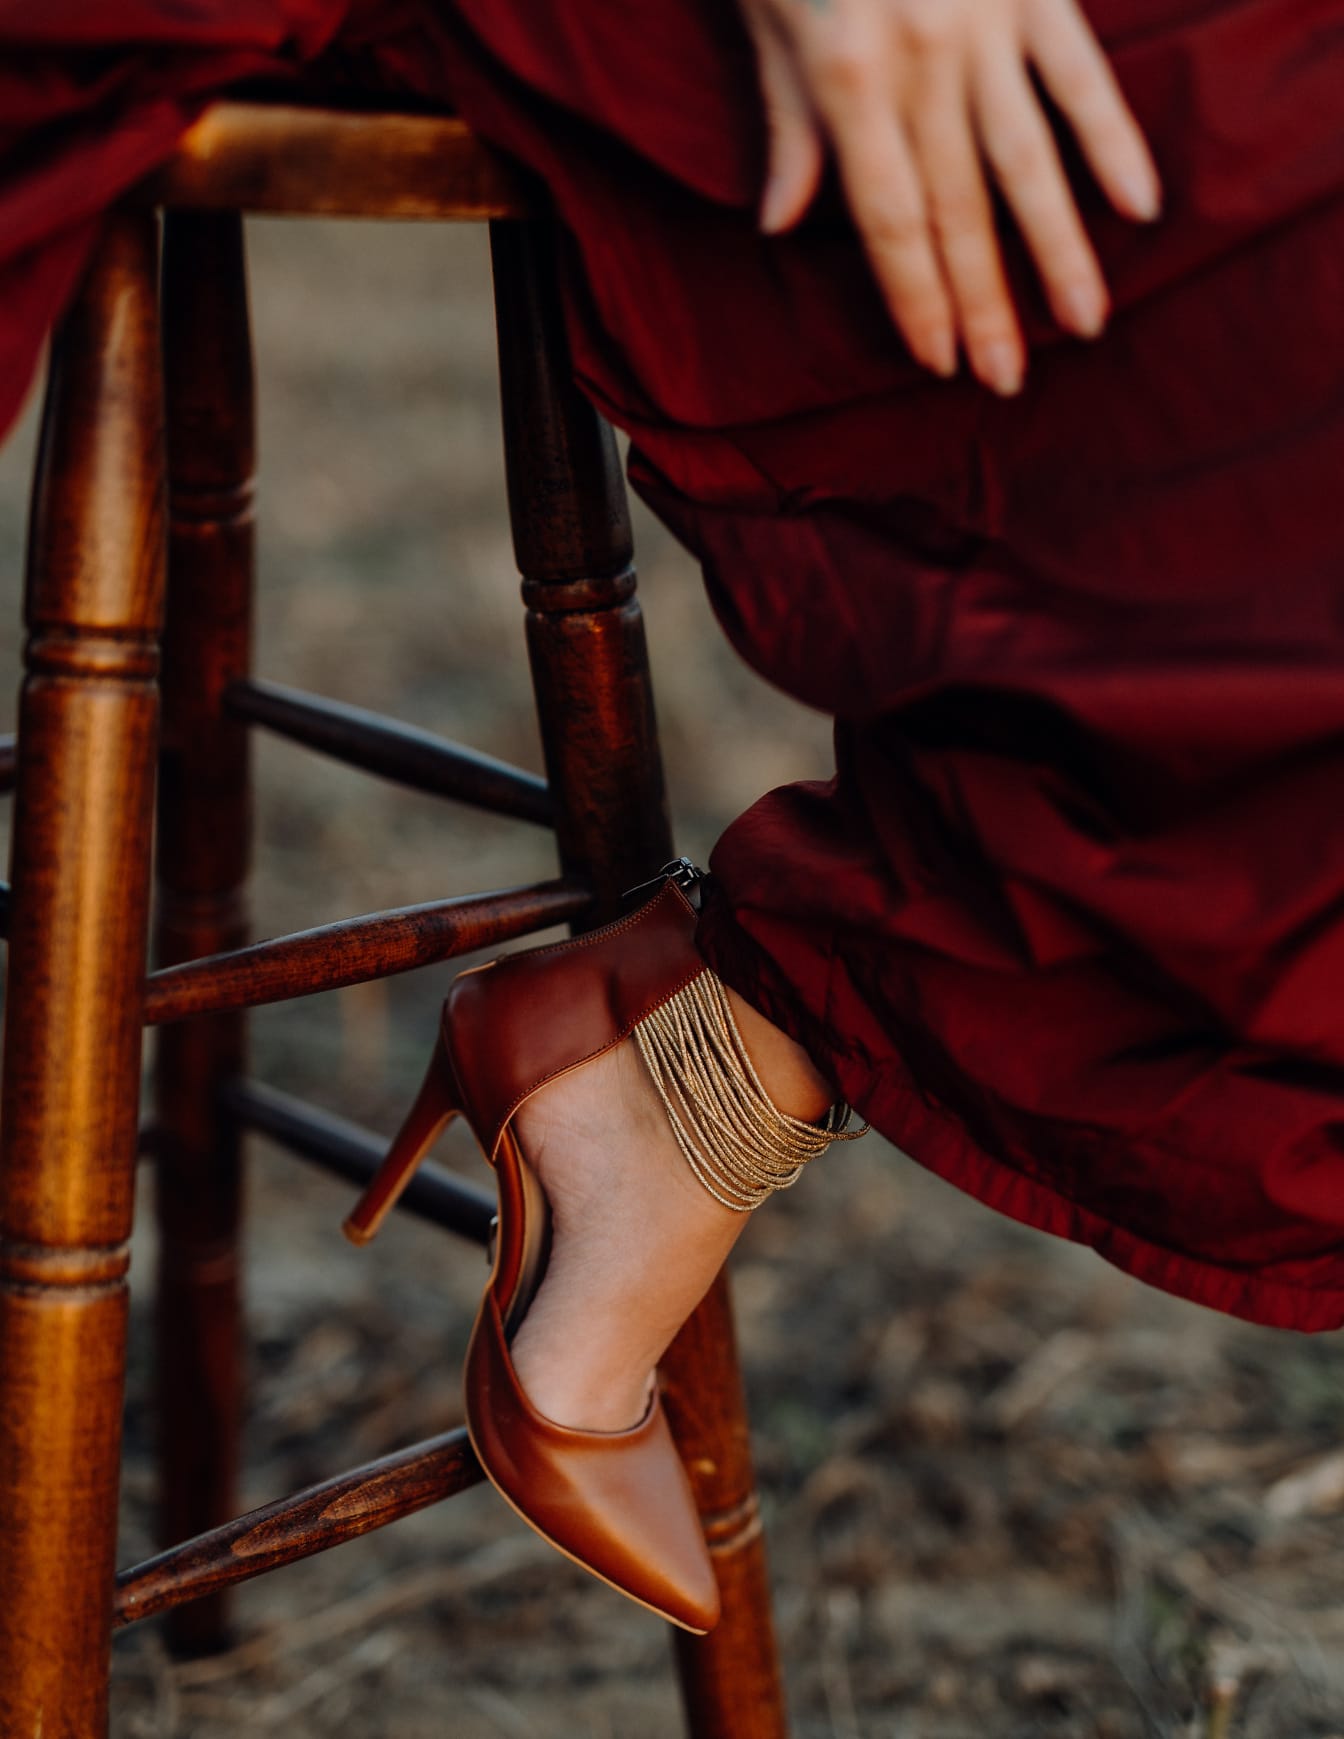 Темно-красные сандалии на ноге женщины в красном платье, сидящей на табурете